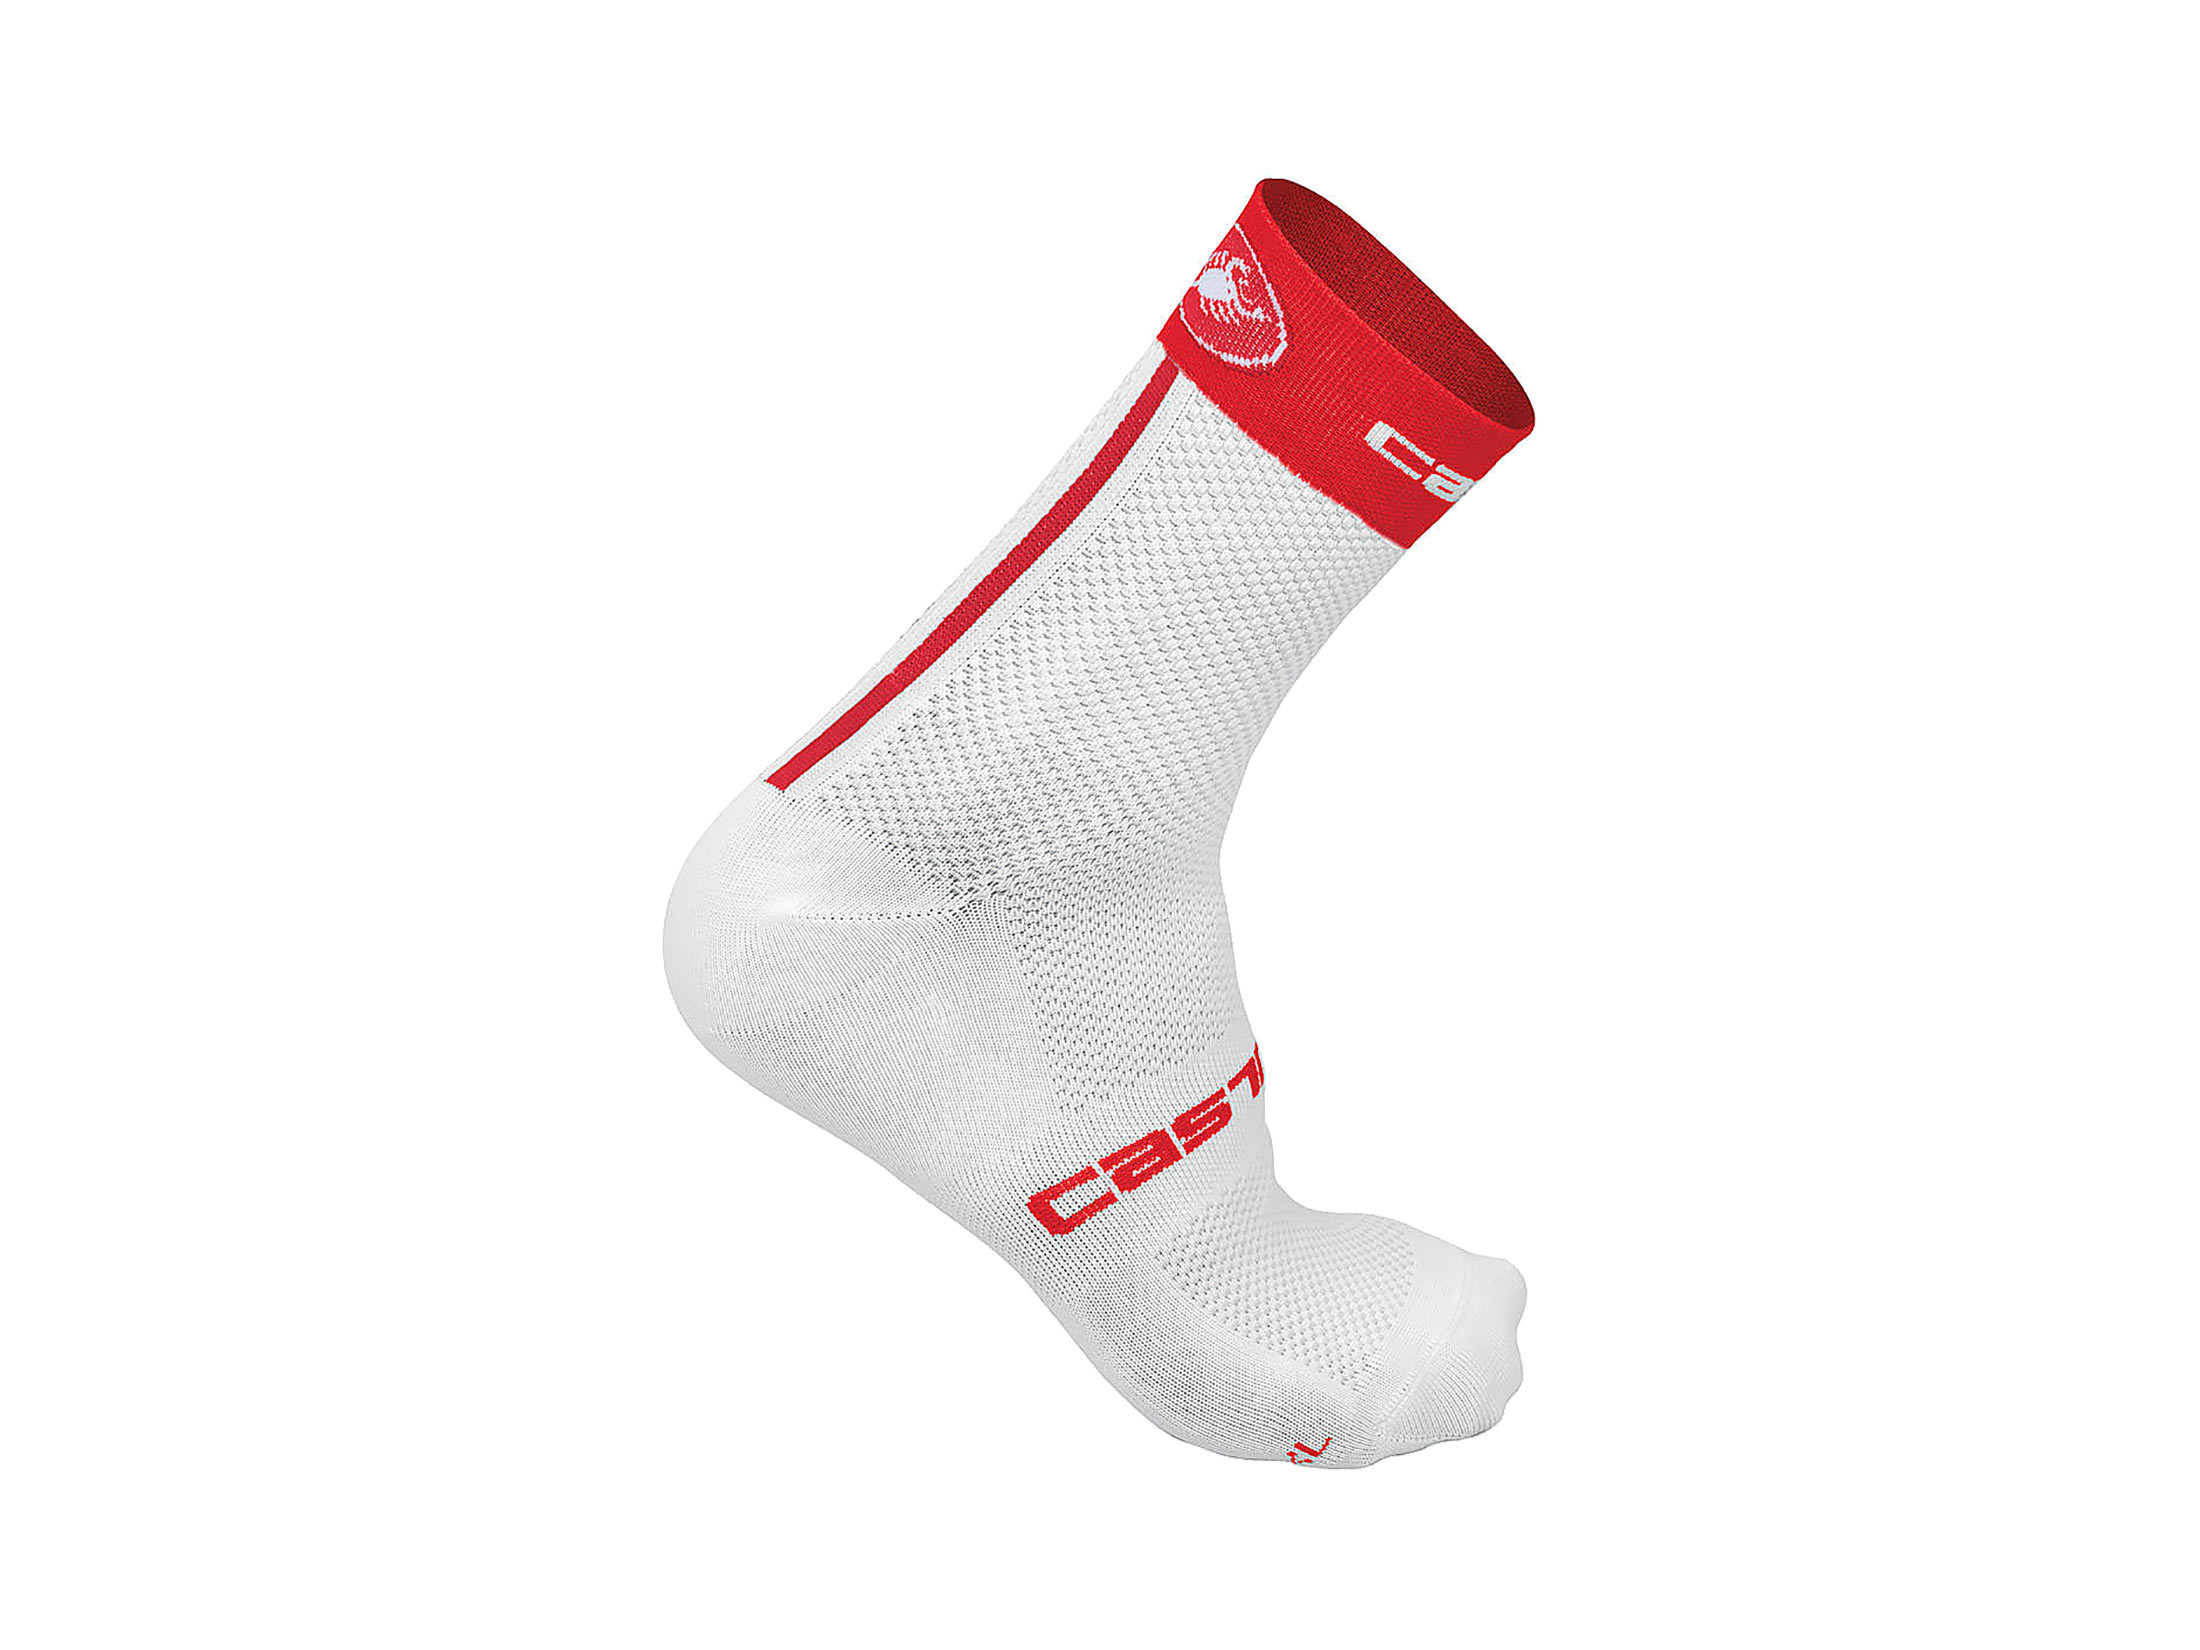 Κάλτσες Castelli Free 9 - Λευκές/Κόκκινες